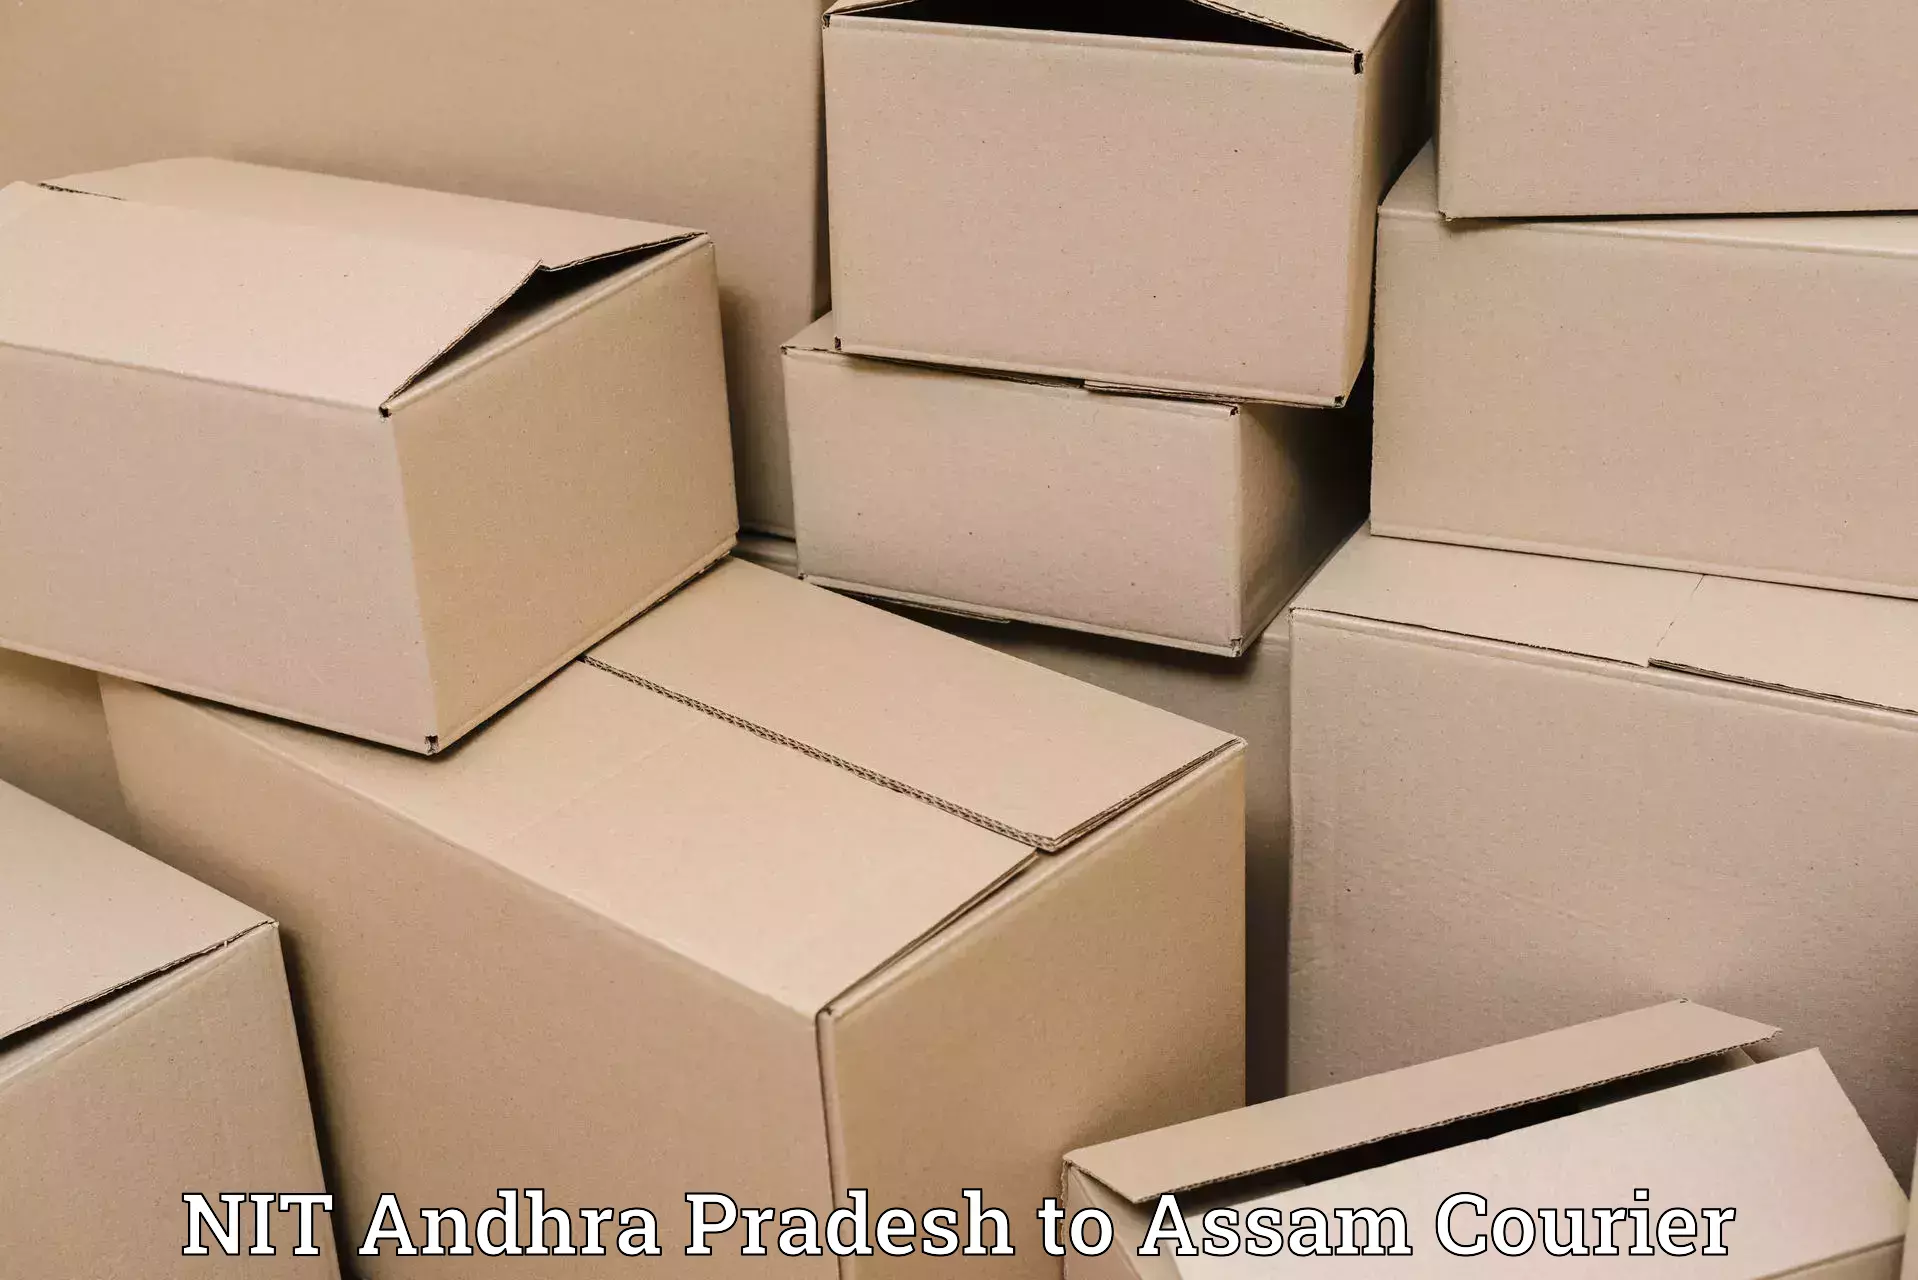 Courier app NIT Andhra Pradesh to Assam